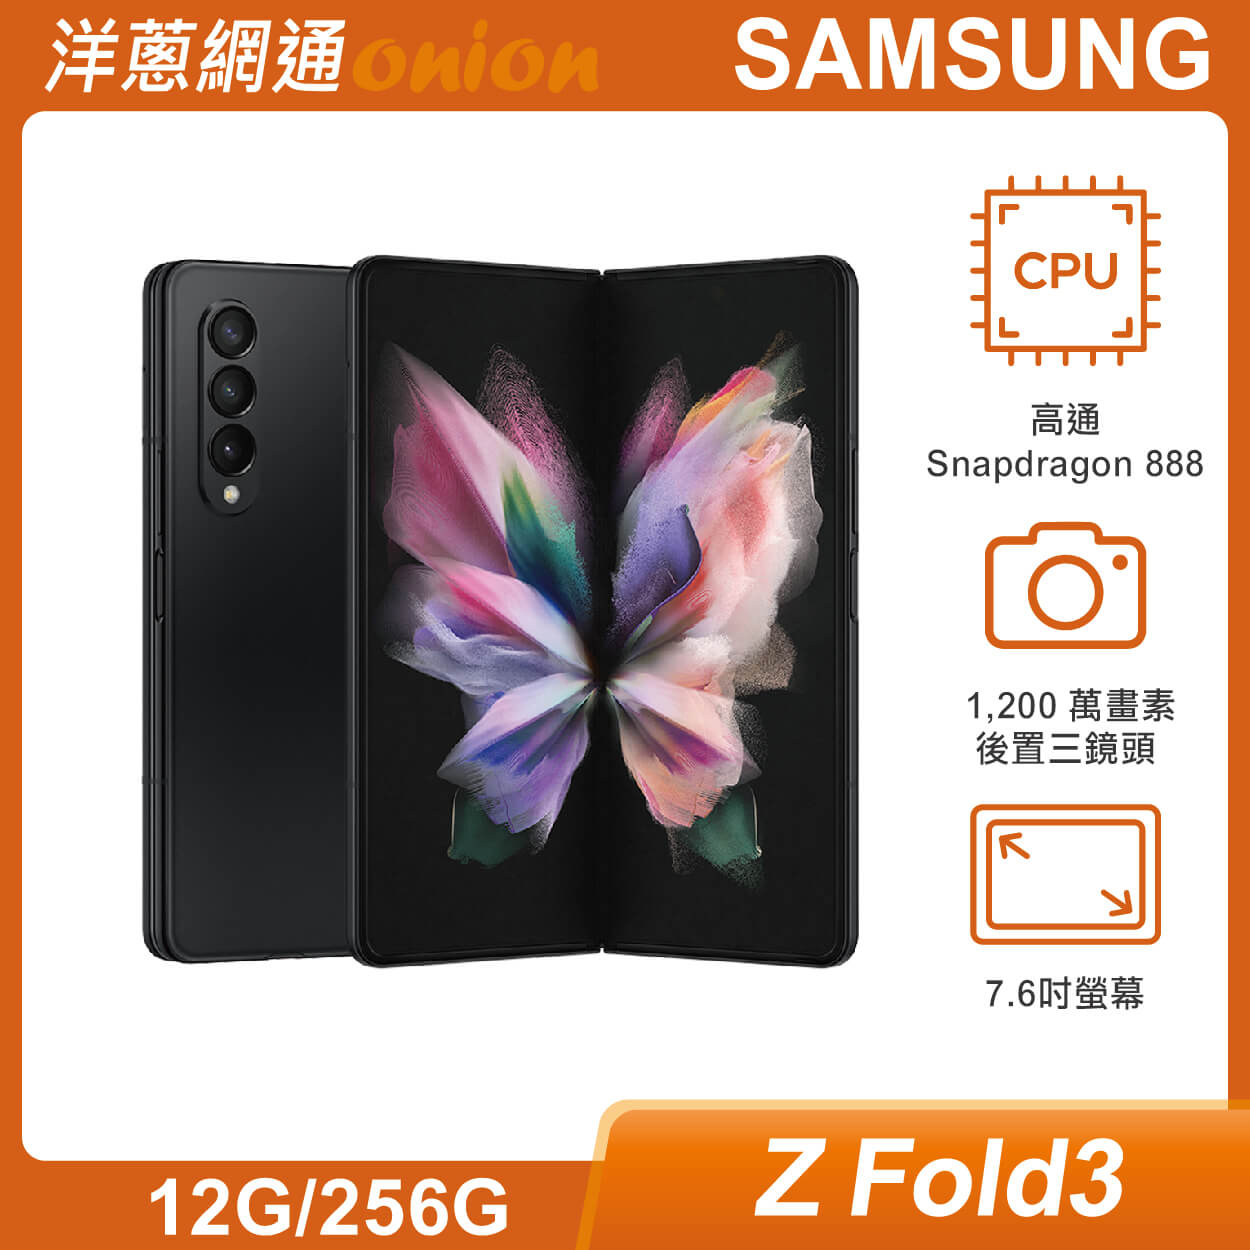 SAMSUNG三星 Galaxy Z Fold3 5G (12G/256G) 